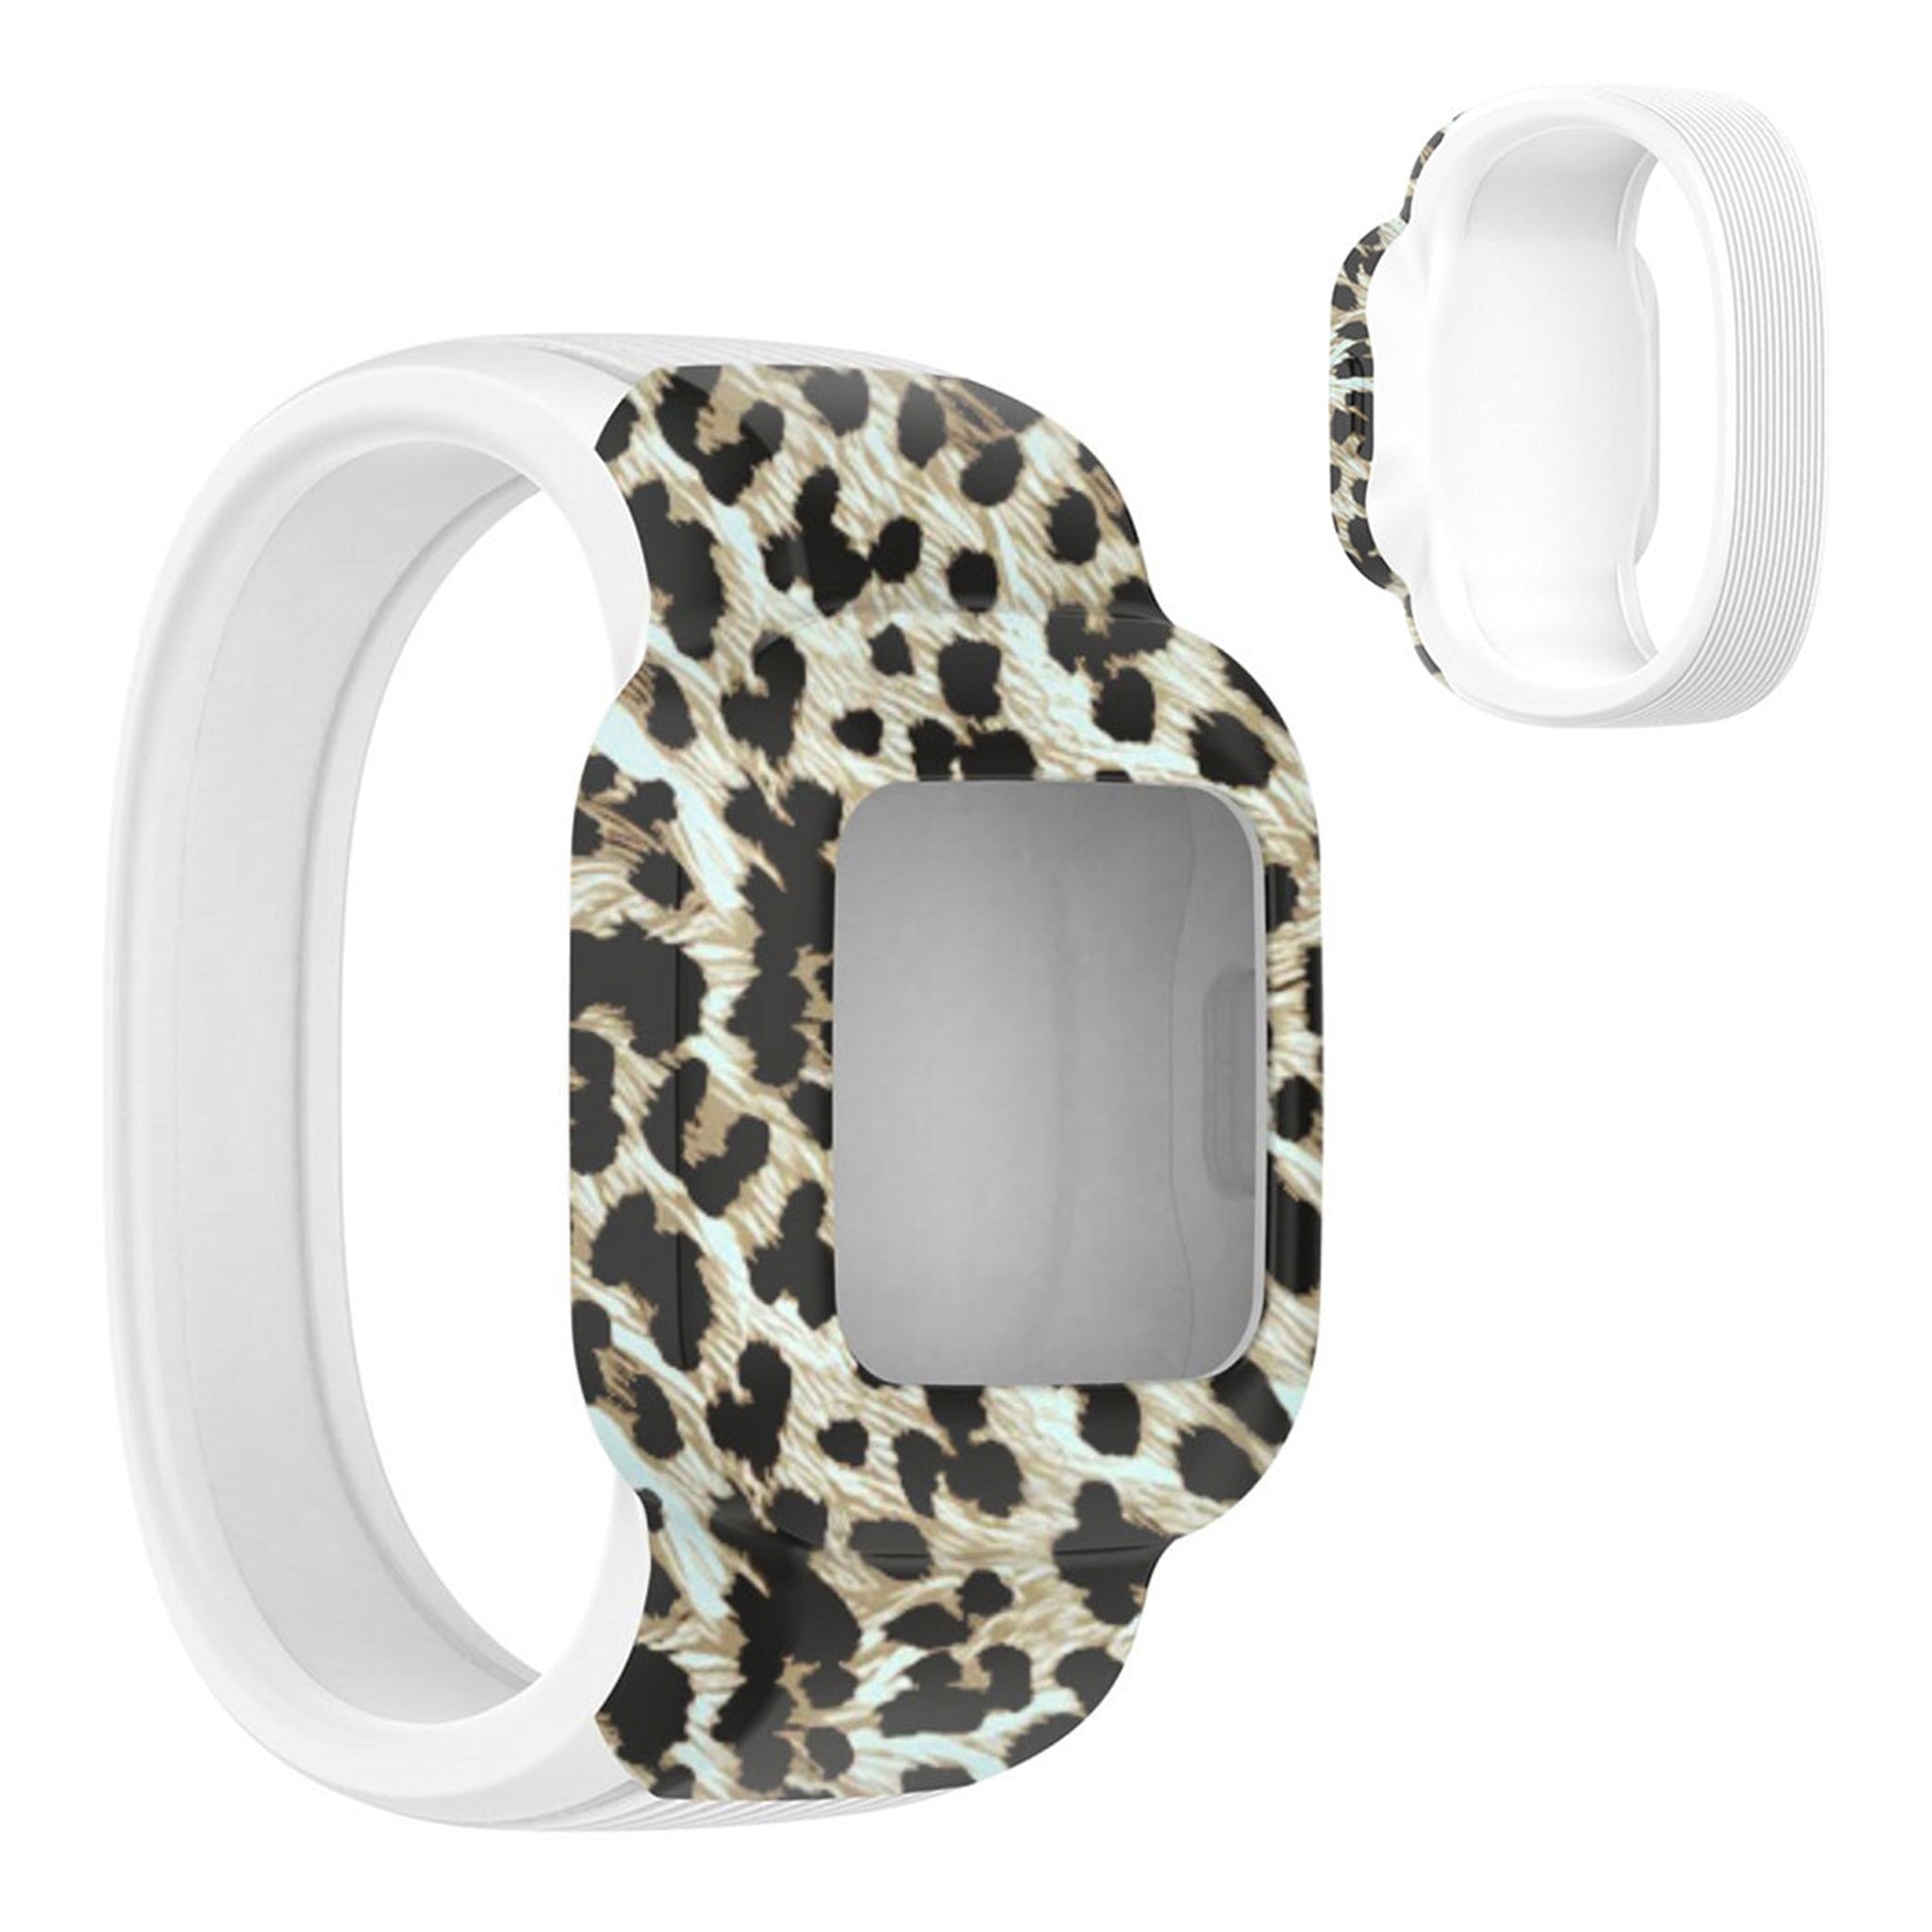 Garmin Vivofit Jr 3 cool pattern silicone watch strap - Brown Leopard / Size: L